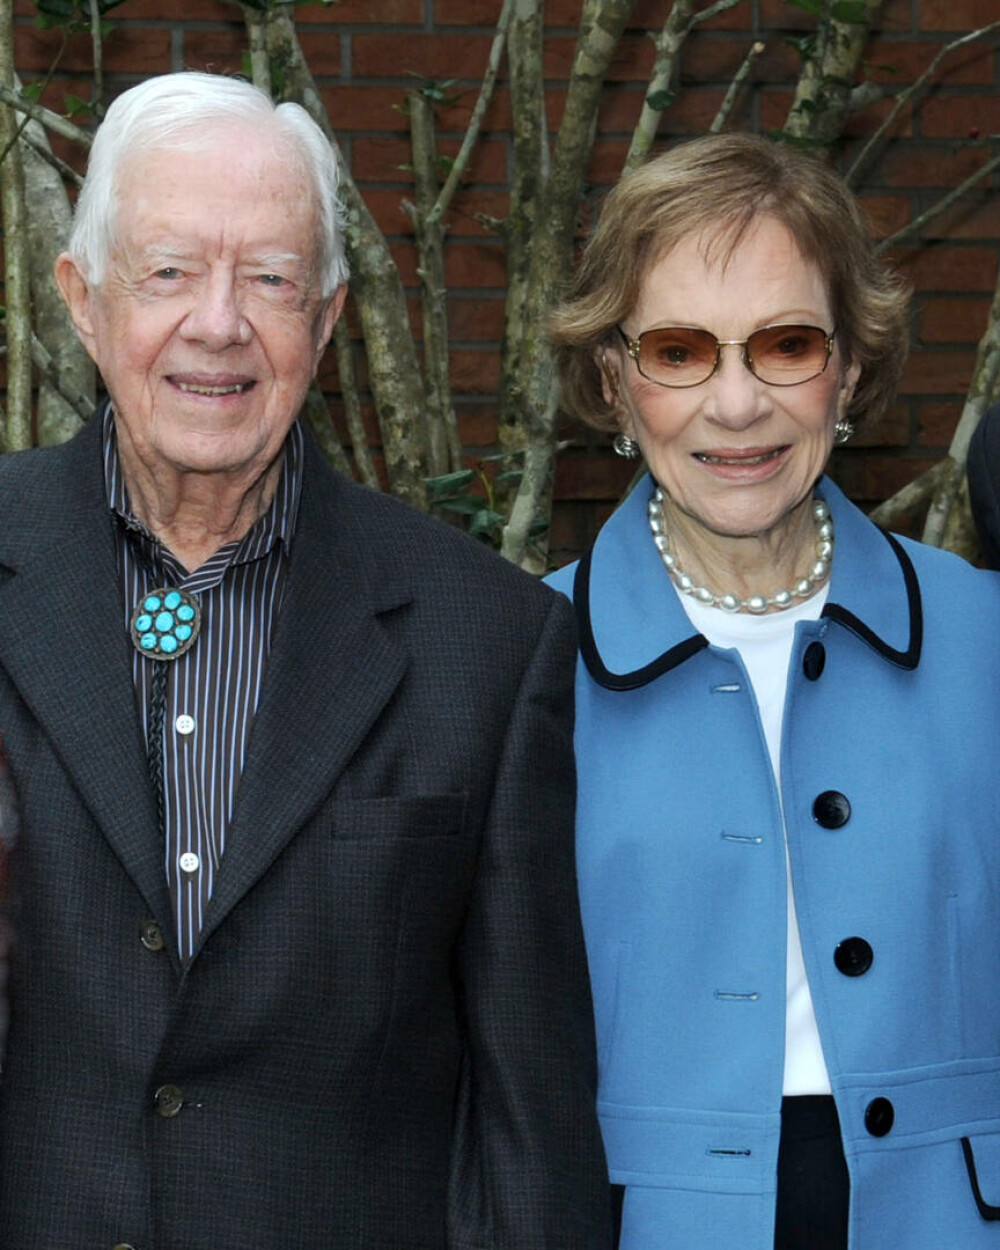 Fosta primă doamnă Rosalynn Carter suferă de demență. Povestea de dragoste trăită de ea și Jimmy Carter | GALERIE FOTO - Imaginea 3